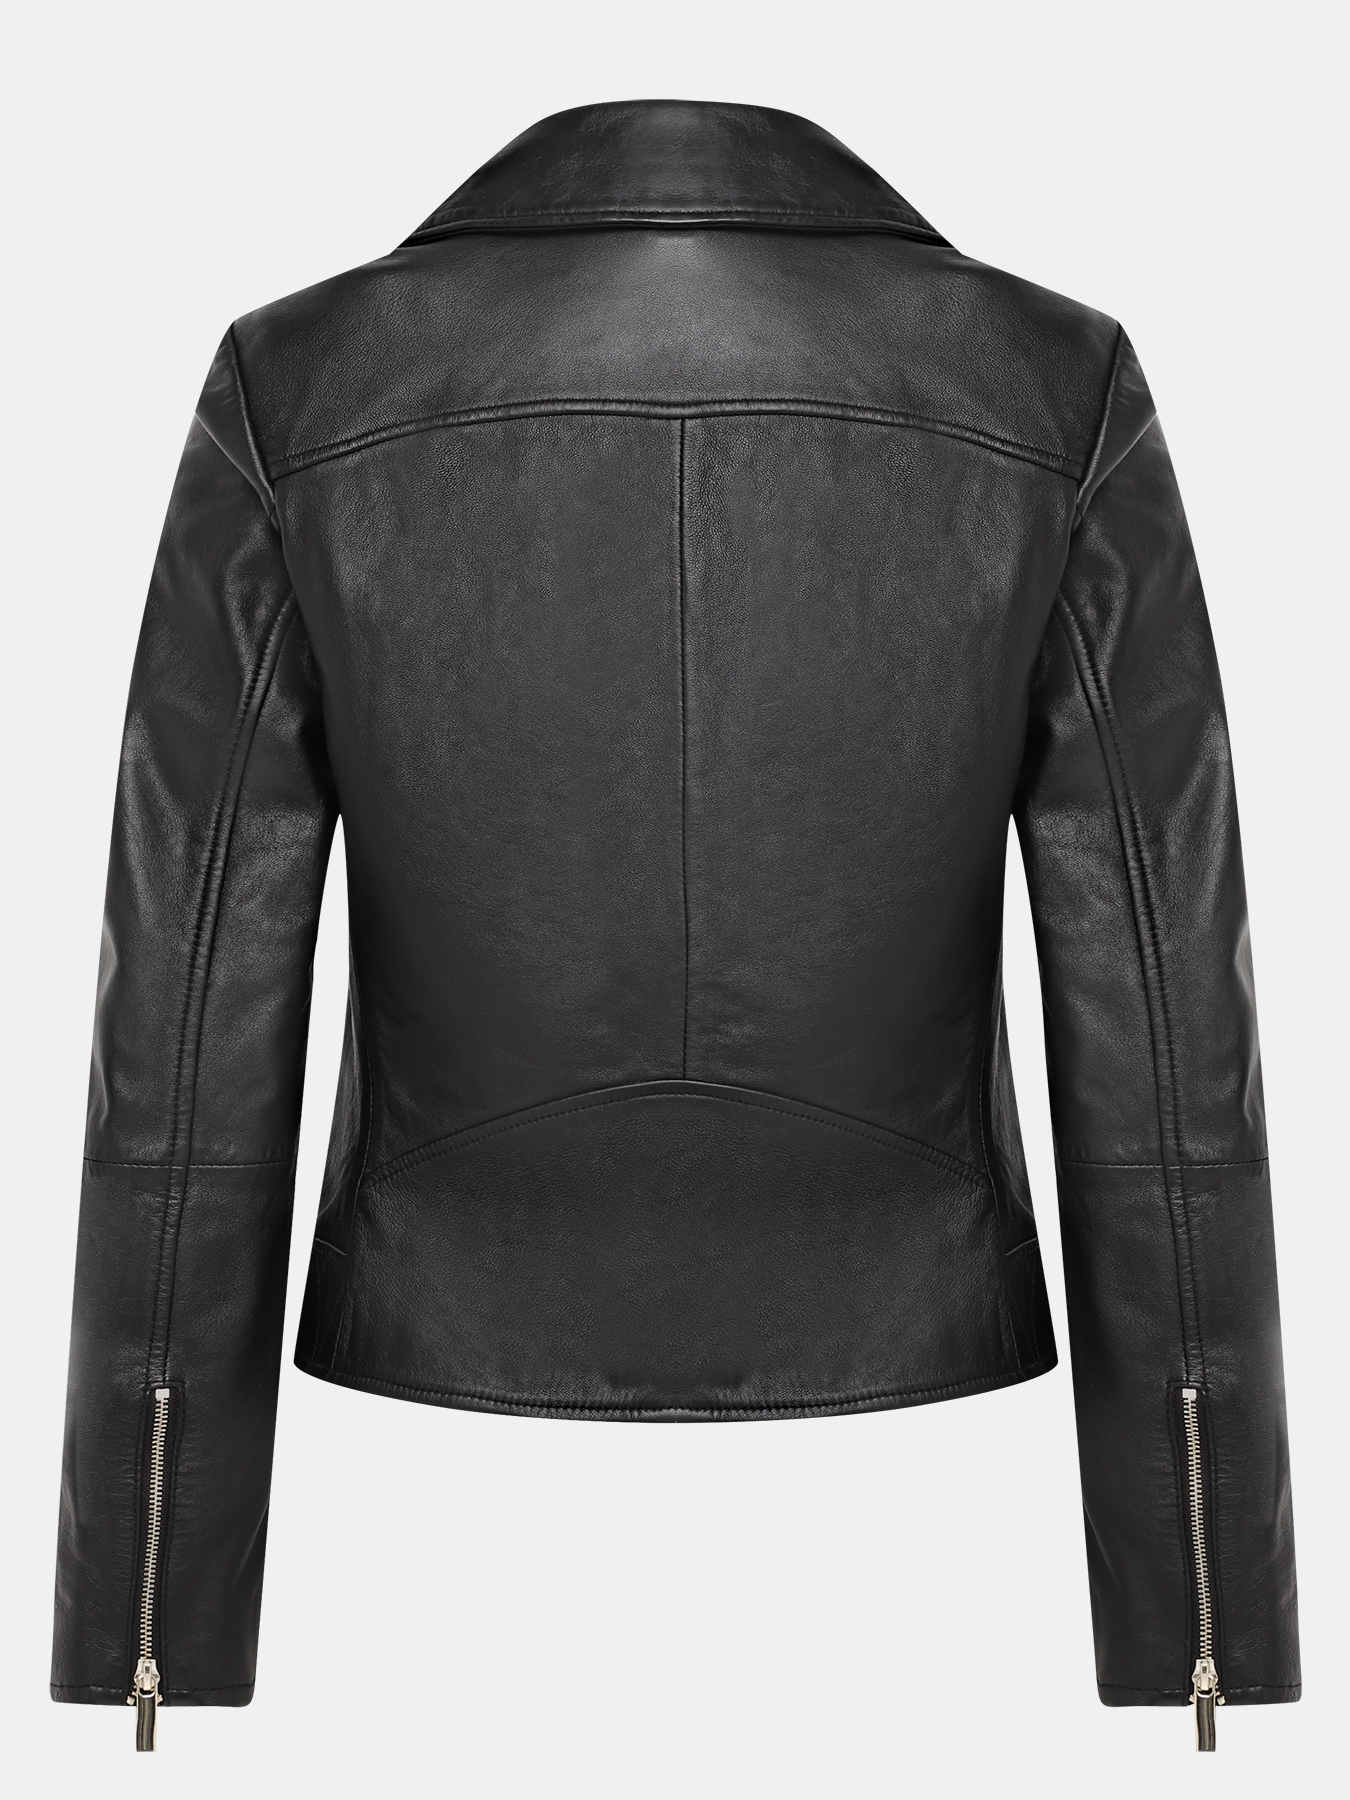 Кожаная куртка Pennyblack 421362-022, цвет черный, размер 44 - фото 2